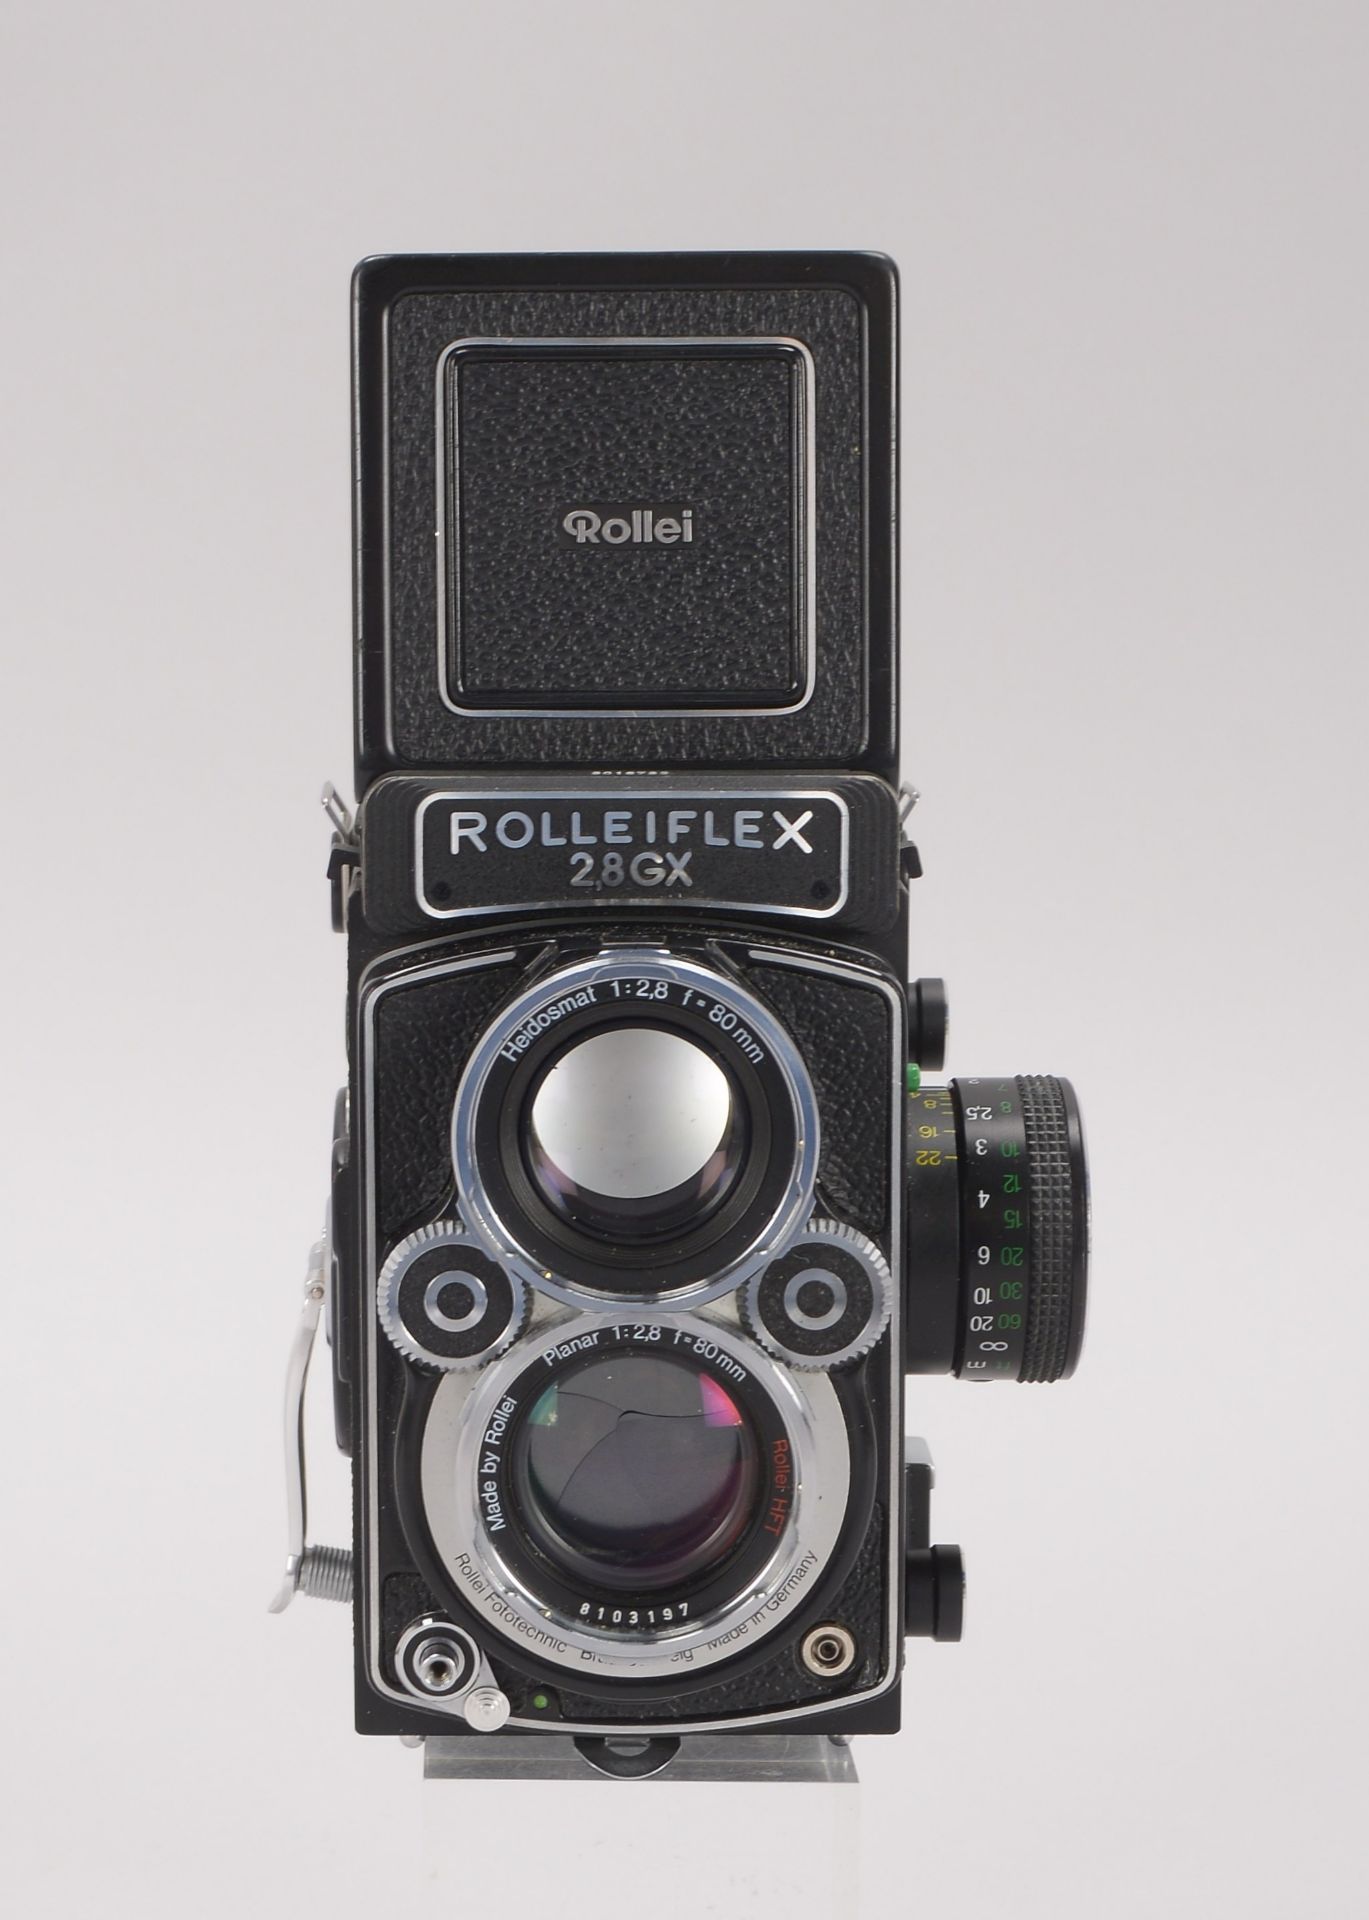 Kamera, -Rolleiflex GX 2,8-, mit Objektiv -Planar 2,8/80, Rollei HFT-, in gepflegtem Zustand, in ori